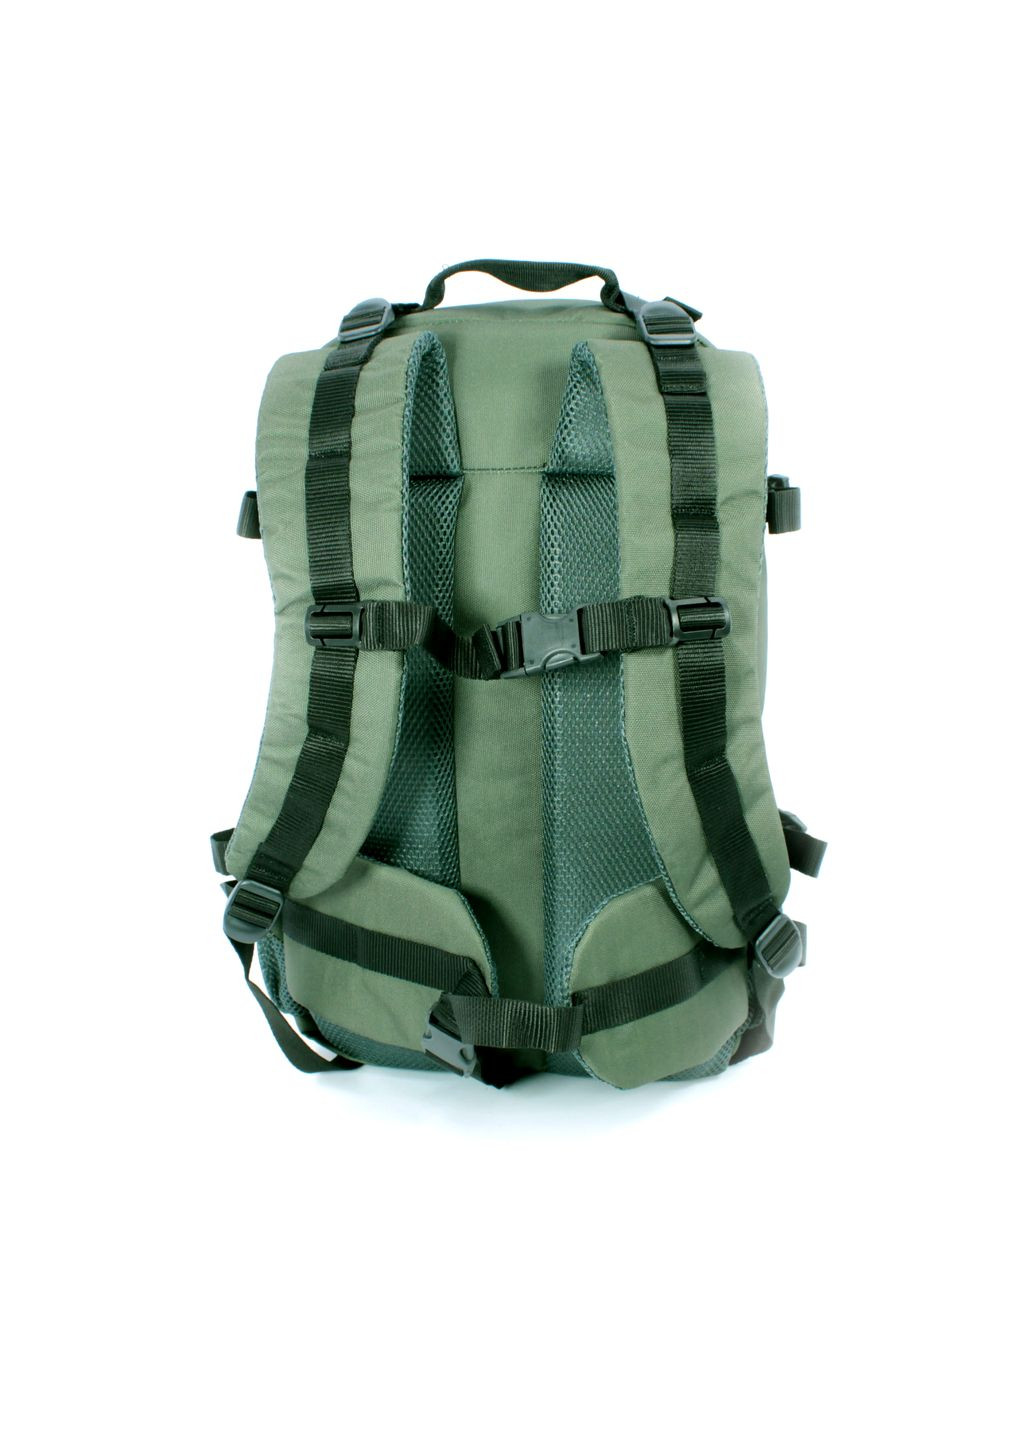 Тактический рюкзак 60001армейский 2отделение фронтальные карманы дополнительные крепления размер 50*34*27зеленый BagWay (285815039)